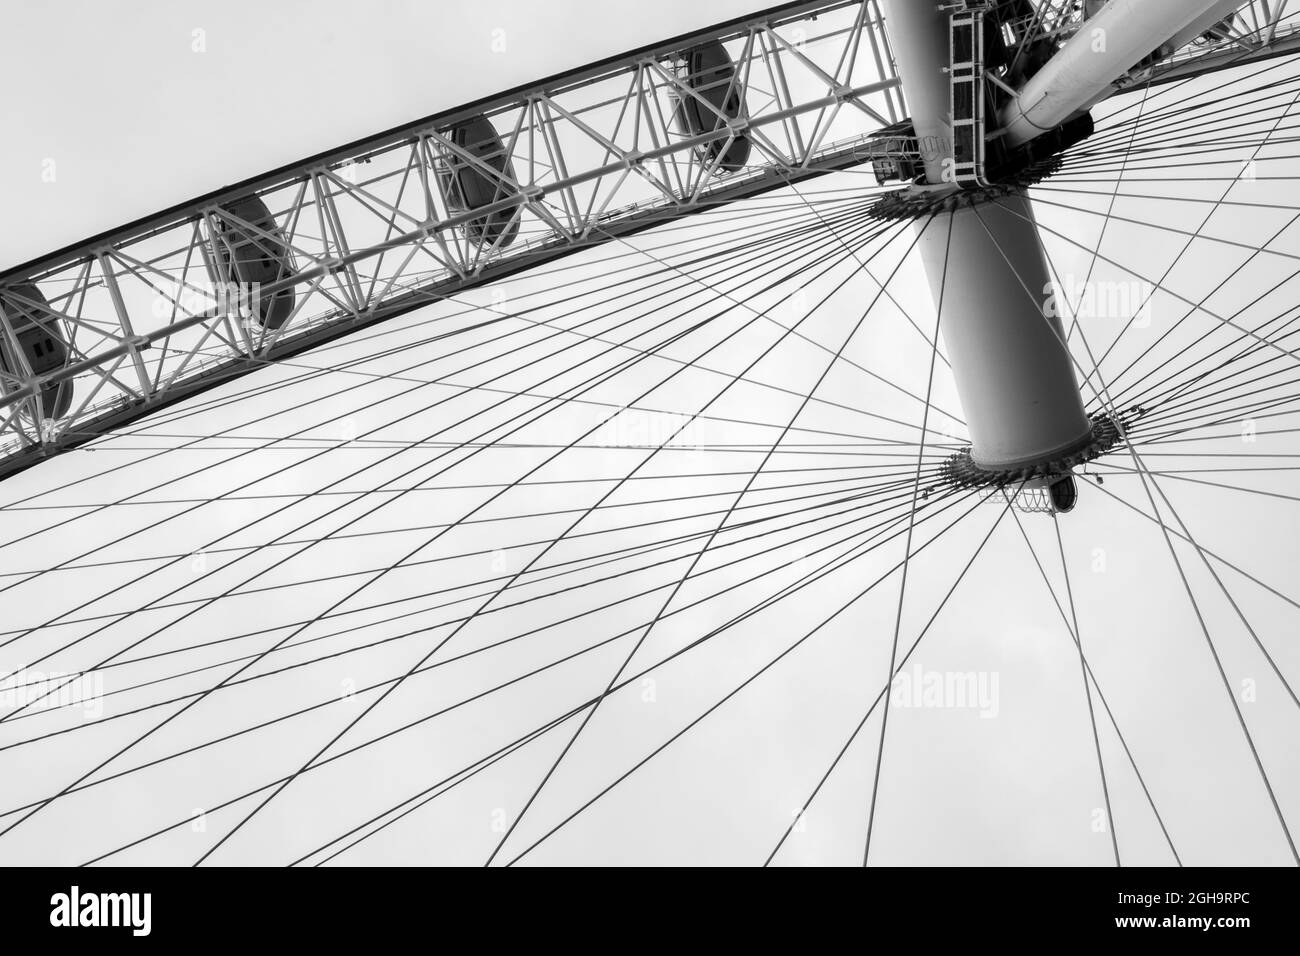 Le London Eye ou Millennium Wheel derrière les branches des arbres. Il est situé sur la rive sud de la Tamise à Westminster, Londres Banque D'Images